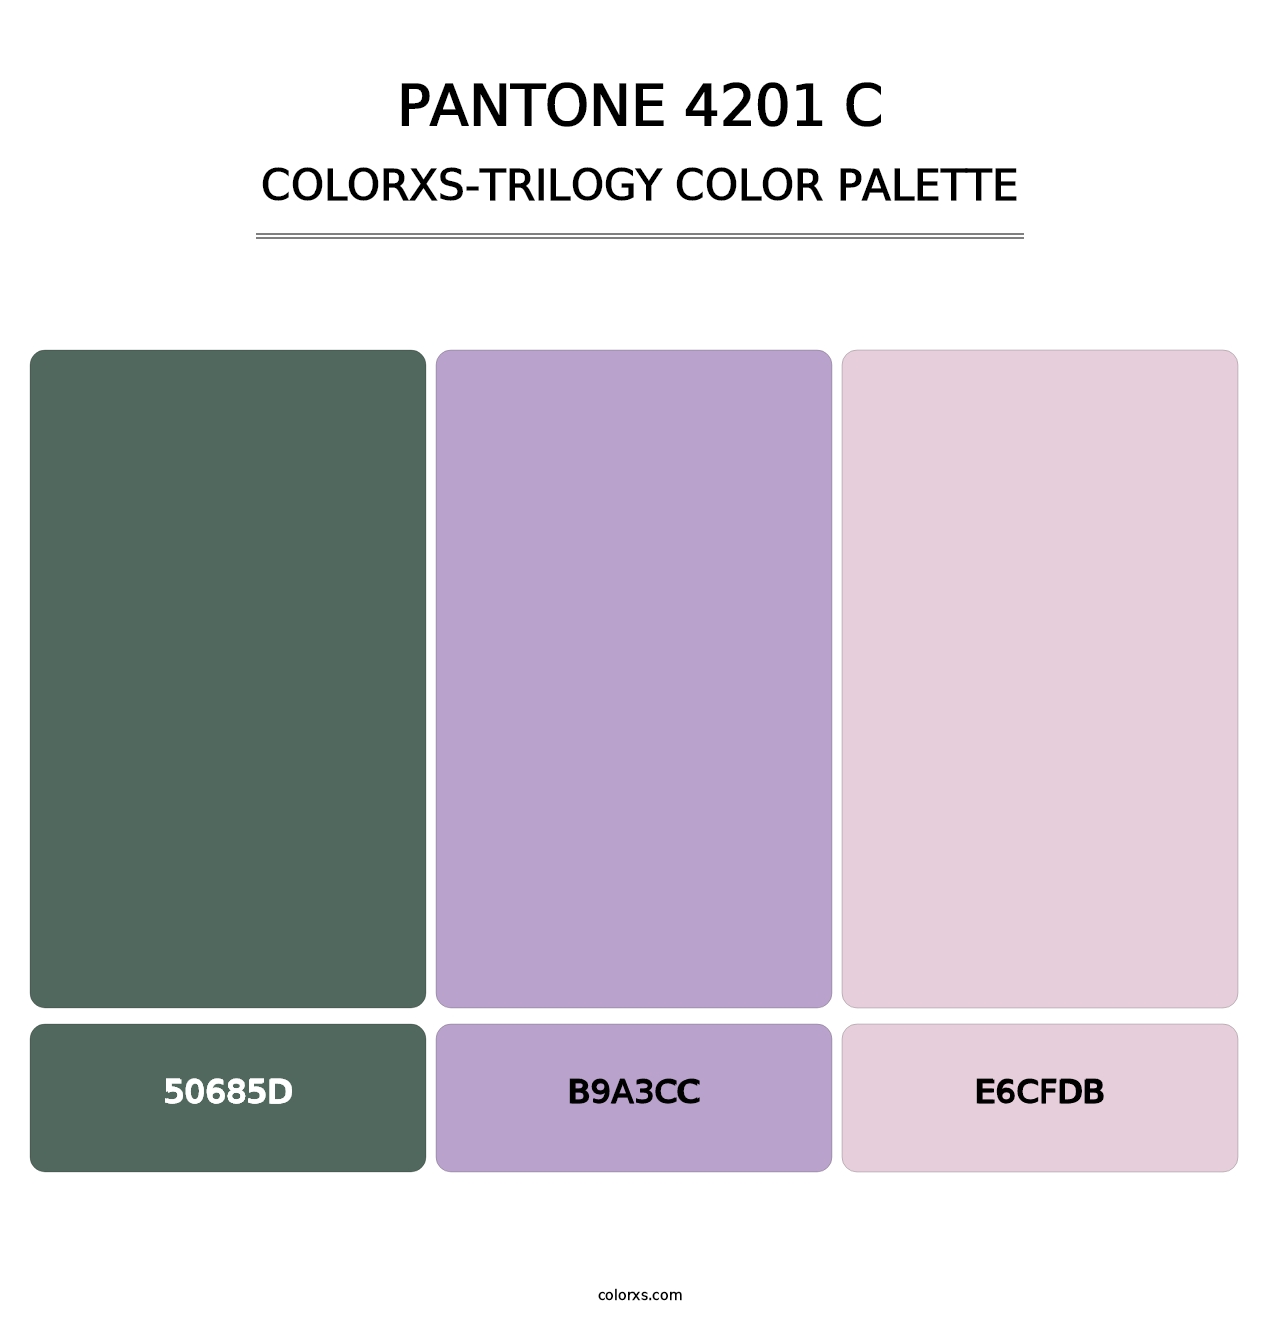 PANTONE 4201 C - Colorxs Trilogy Palette